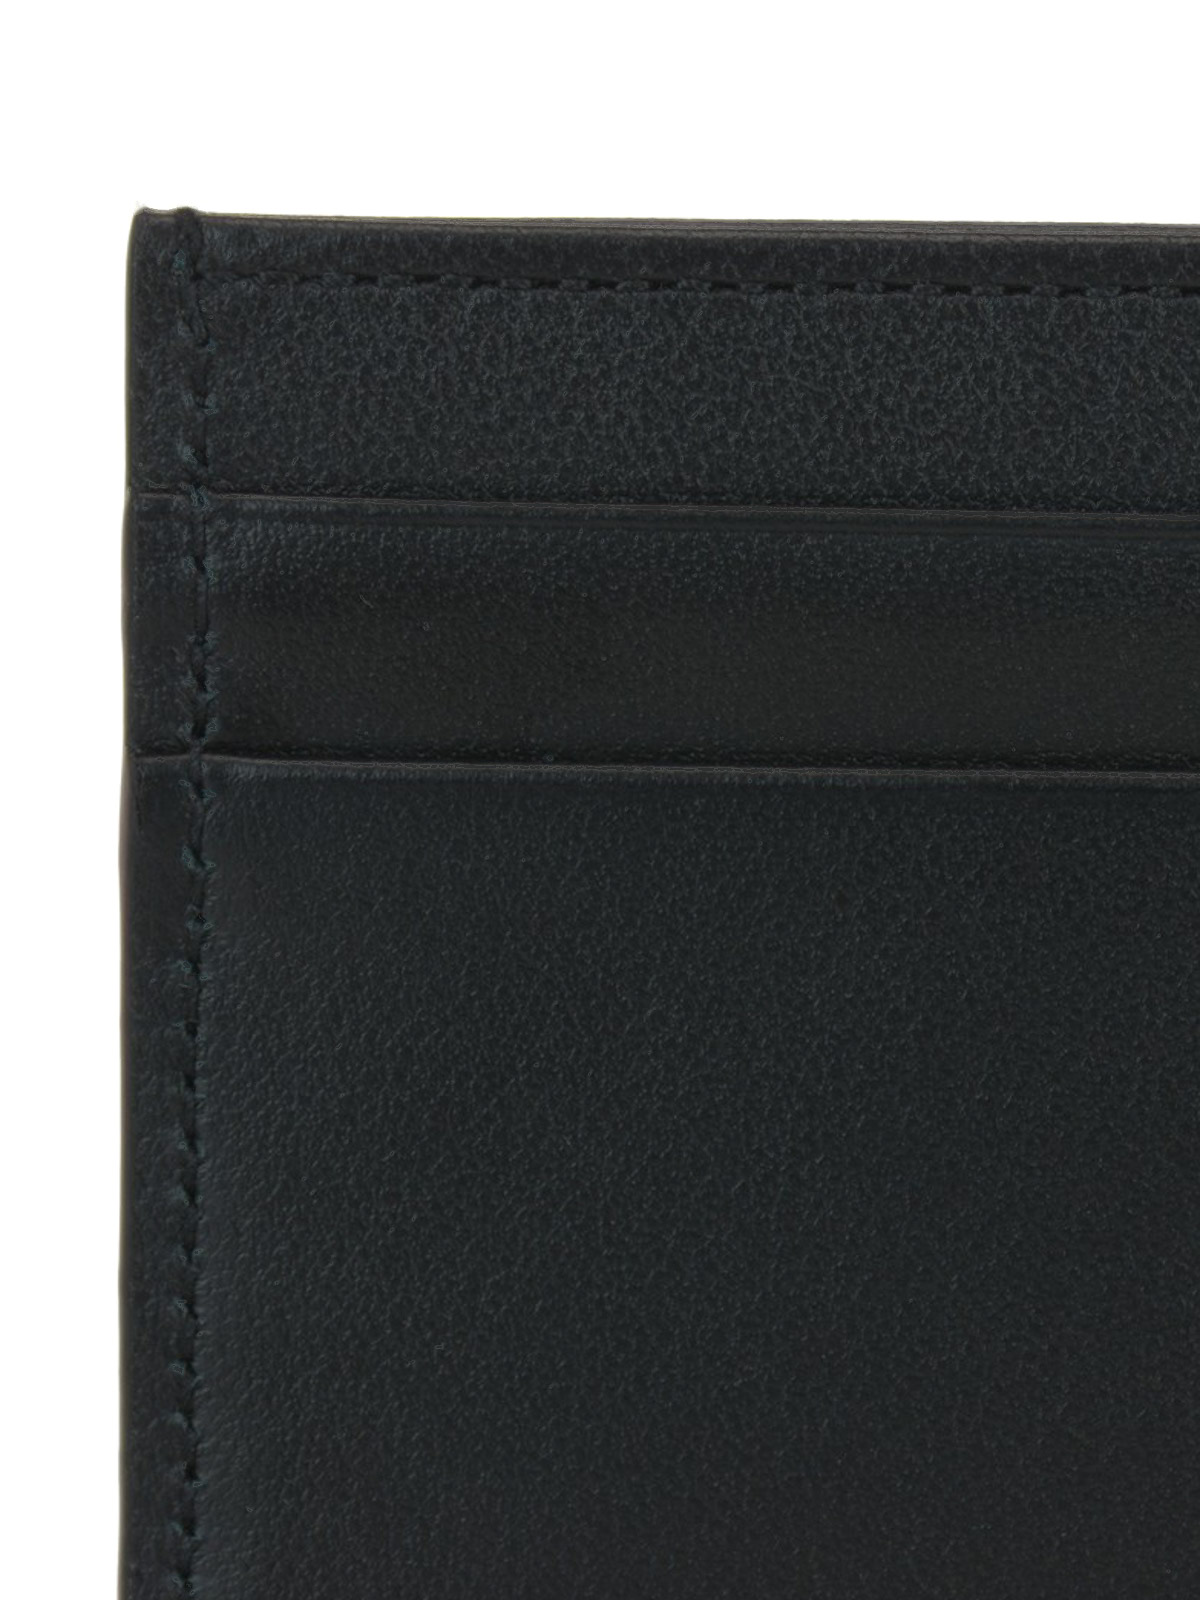 Ezel Veranderlijk kanker Wallets & purses Dolce & Gabbana - Logo print leather cardholder -  BP0330AA062HNI43